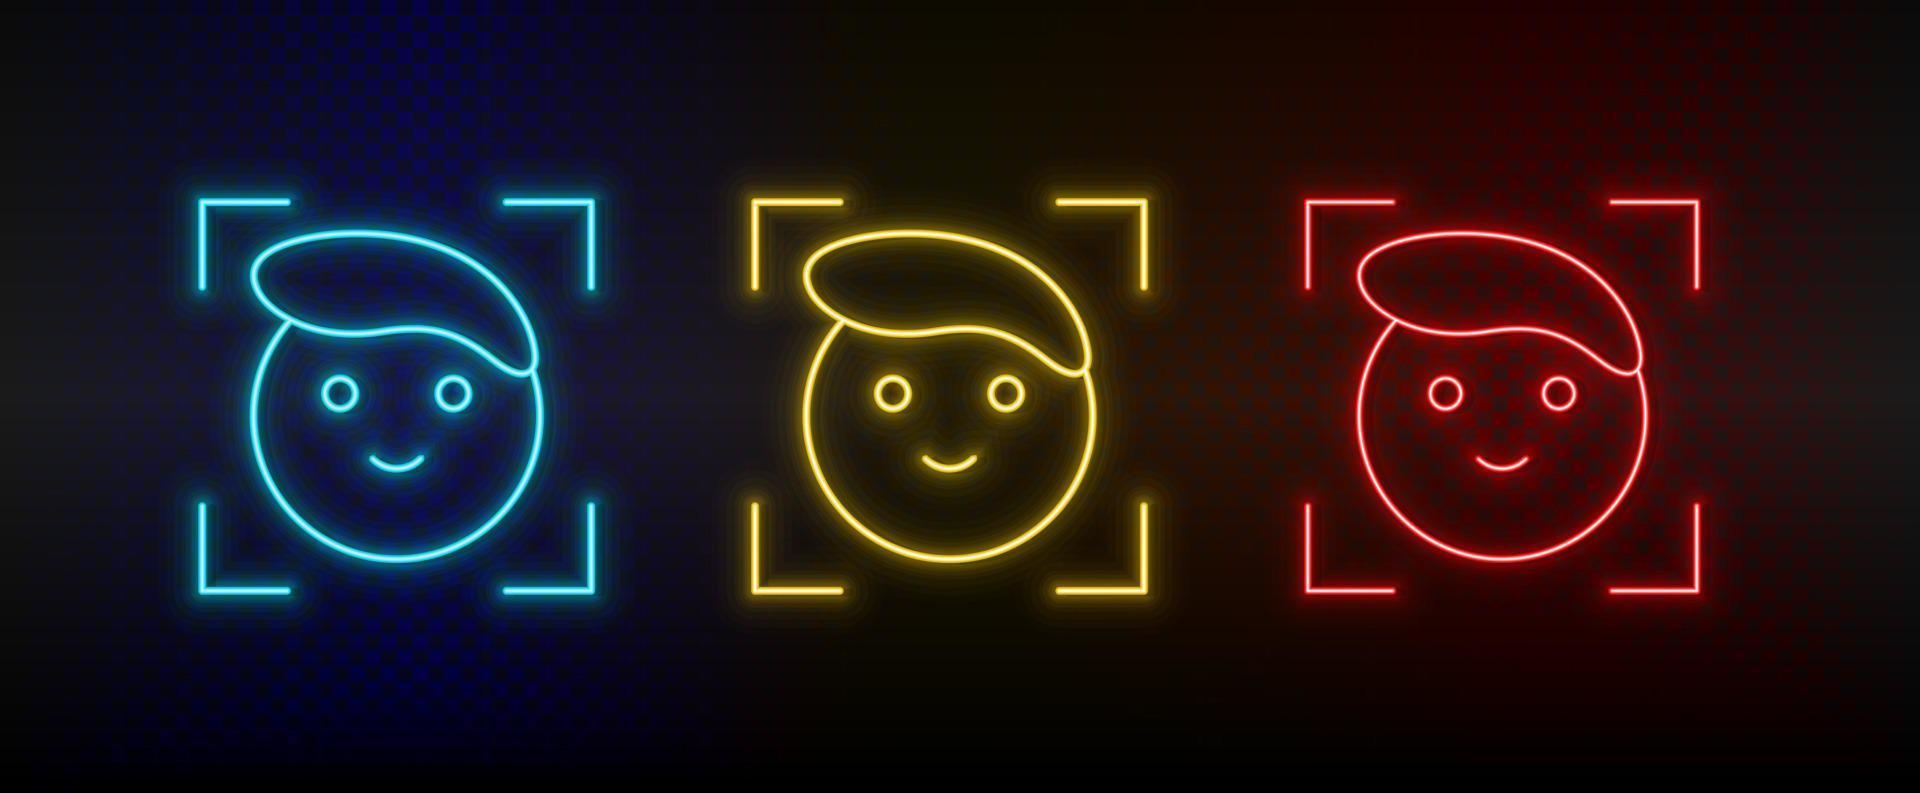 iconos de neón. tecnología de reconocimiento facial. conjunto de icono de vector de neón rojo, azul, amarillo sobre fondo oscuro